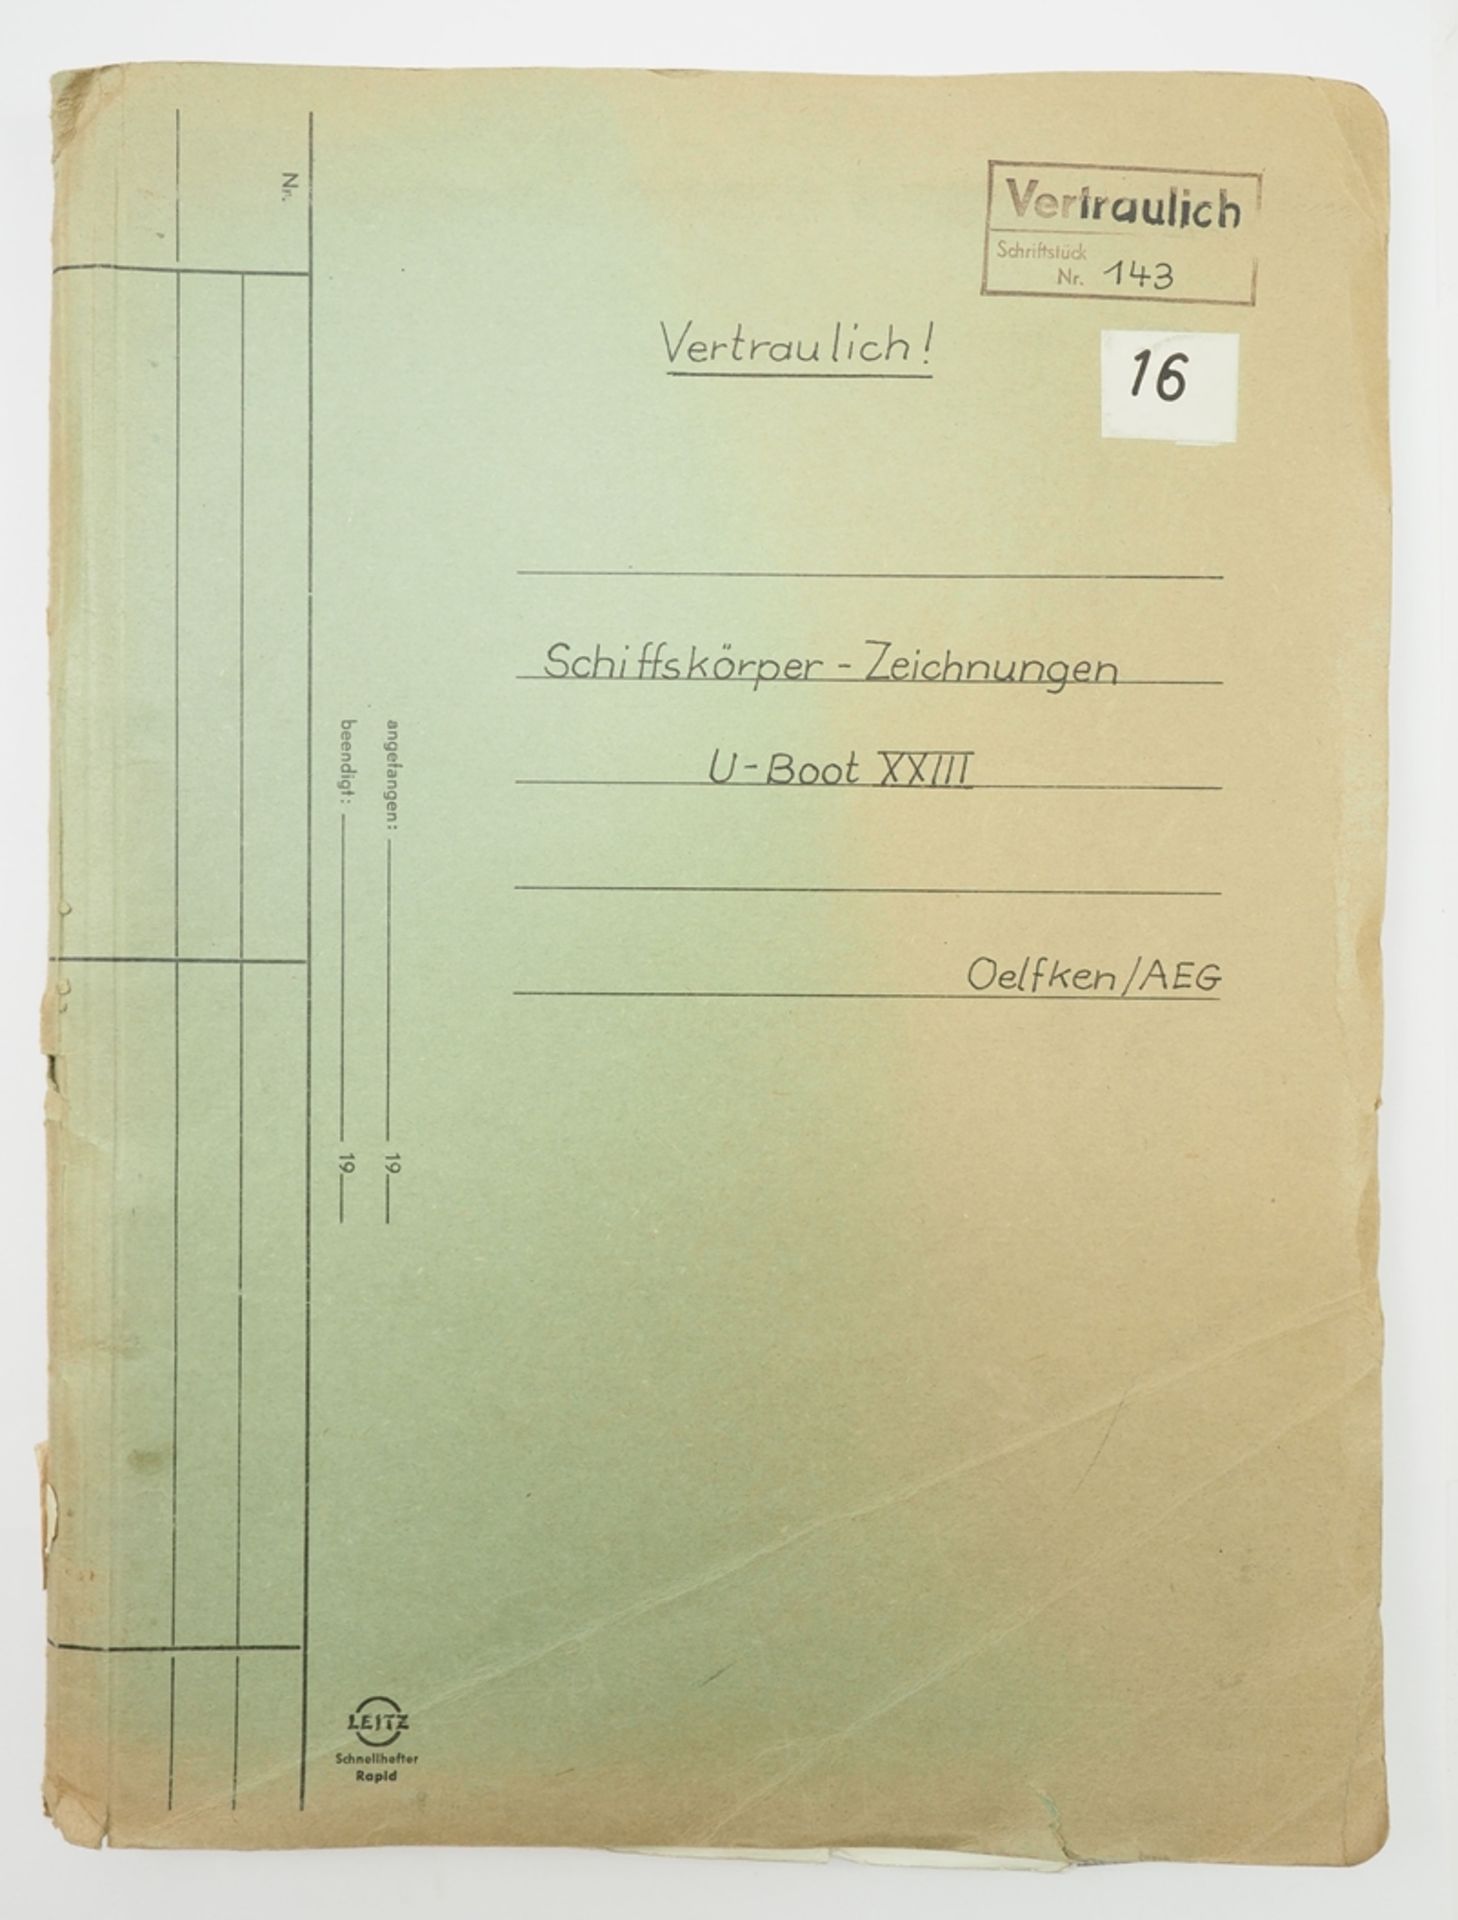 Schiffskörper Zeichnungen U-Boot XXIII.